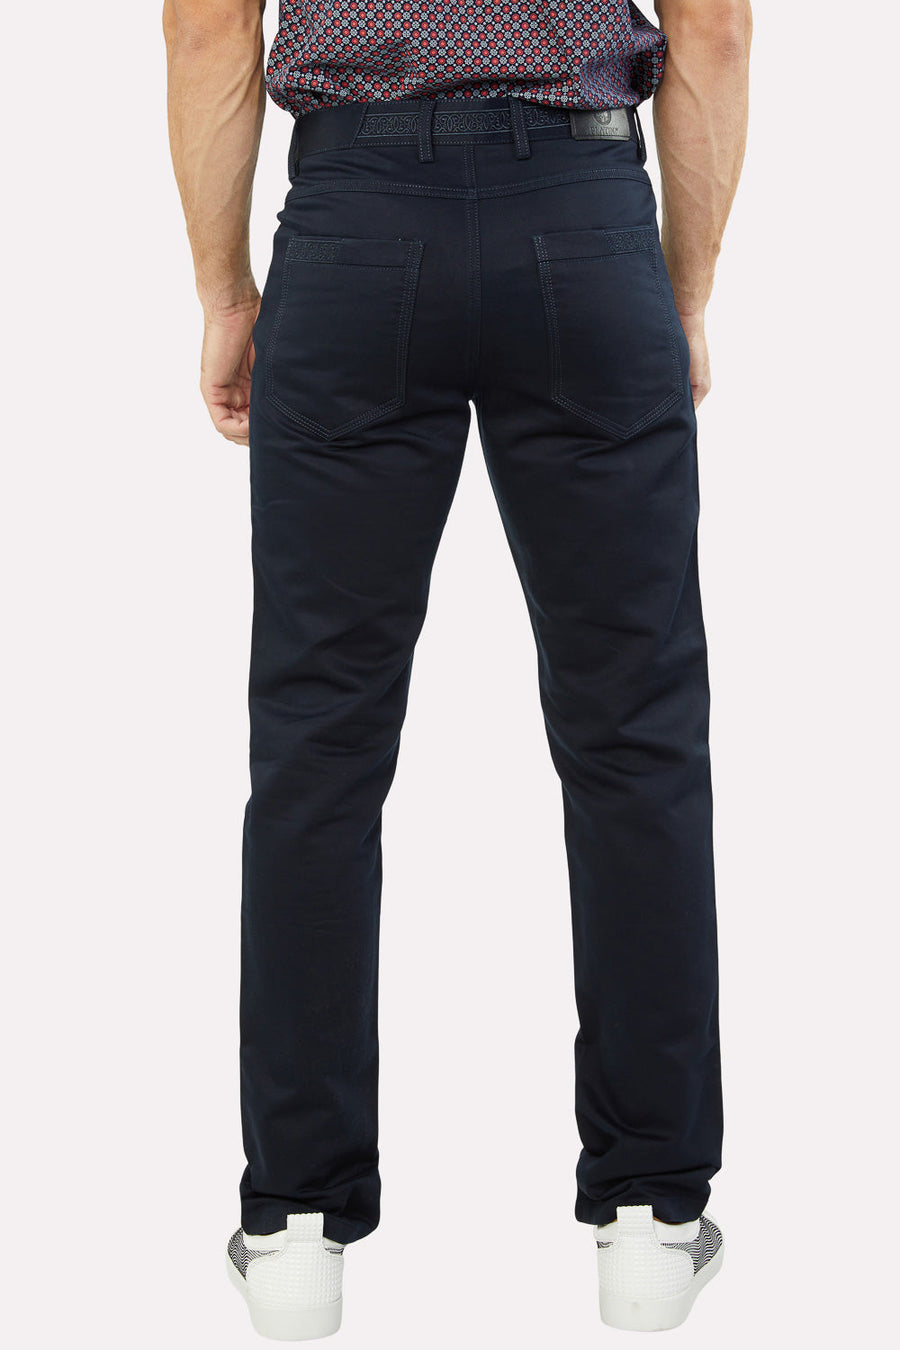 Men's Jeans Pants Navy | FDP7823